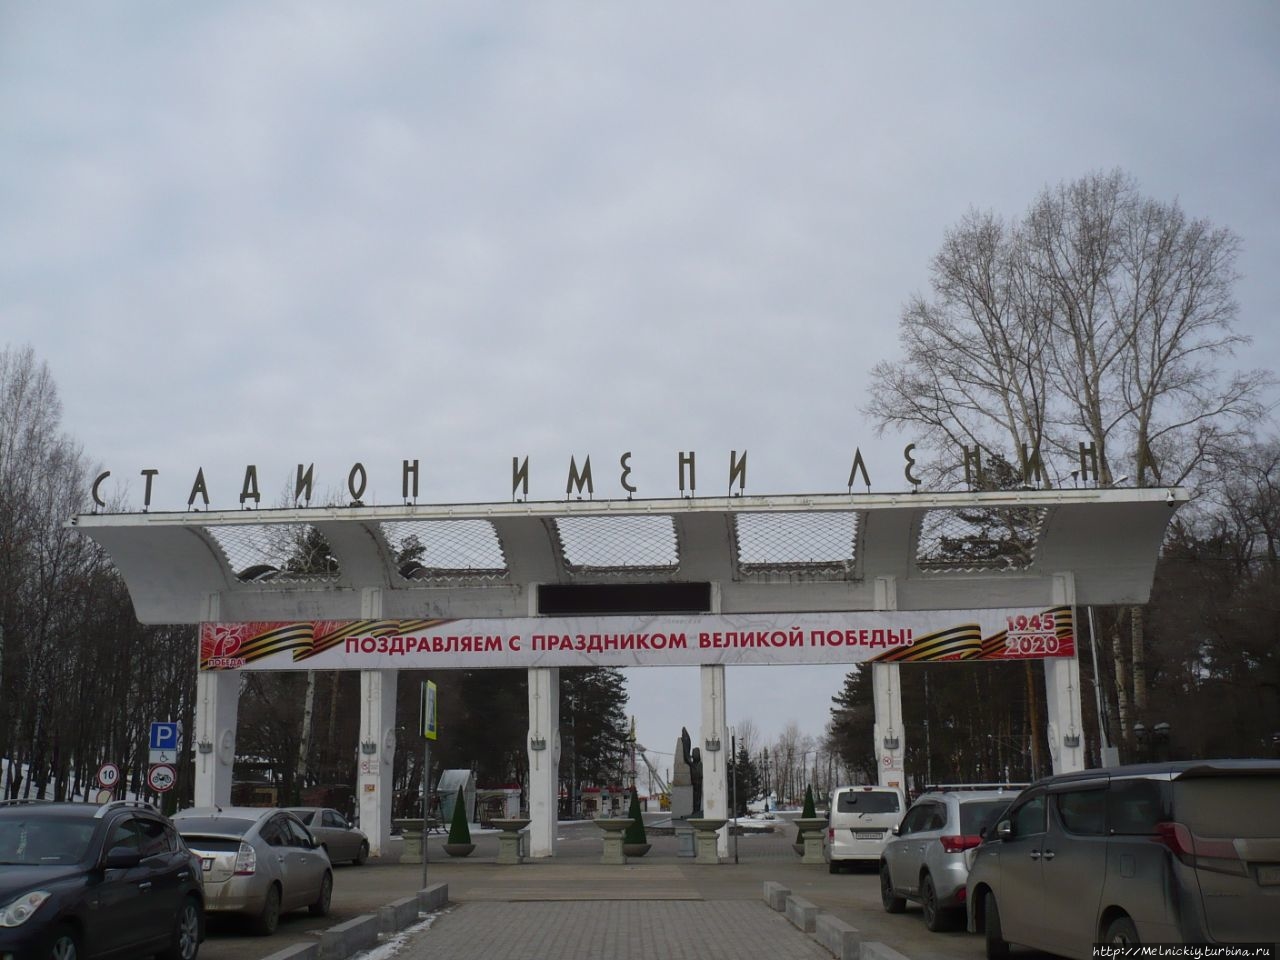 Стадион имени В.И. Ленина / Stadium named after V.I. Lenin